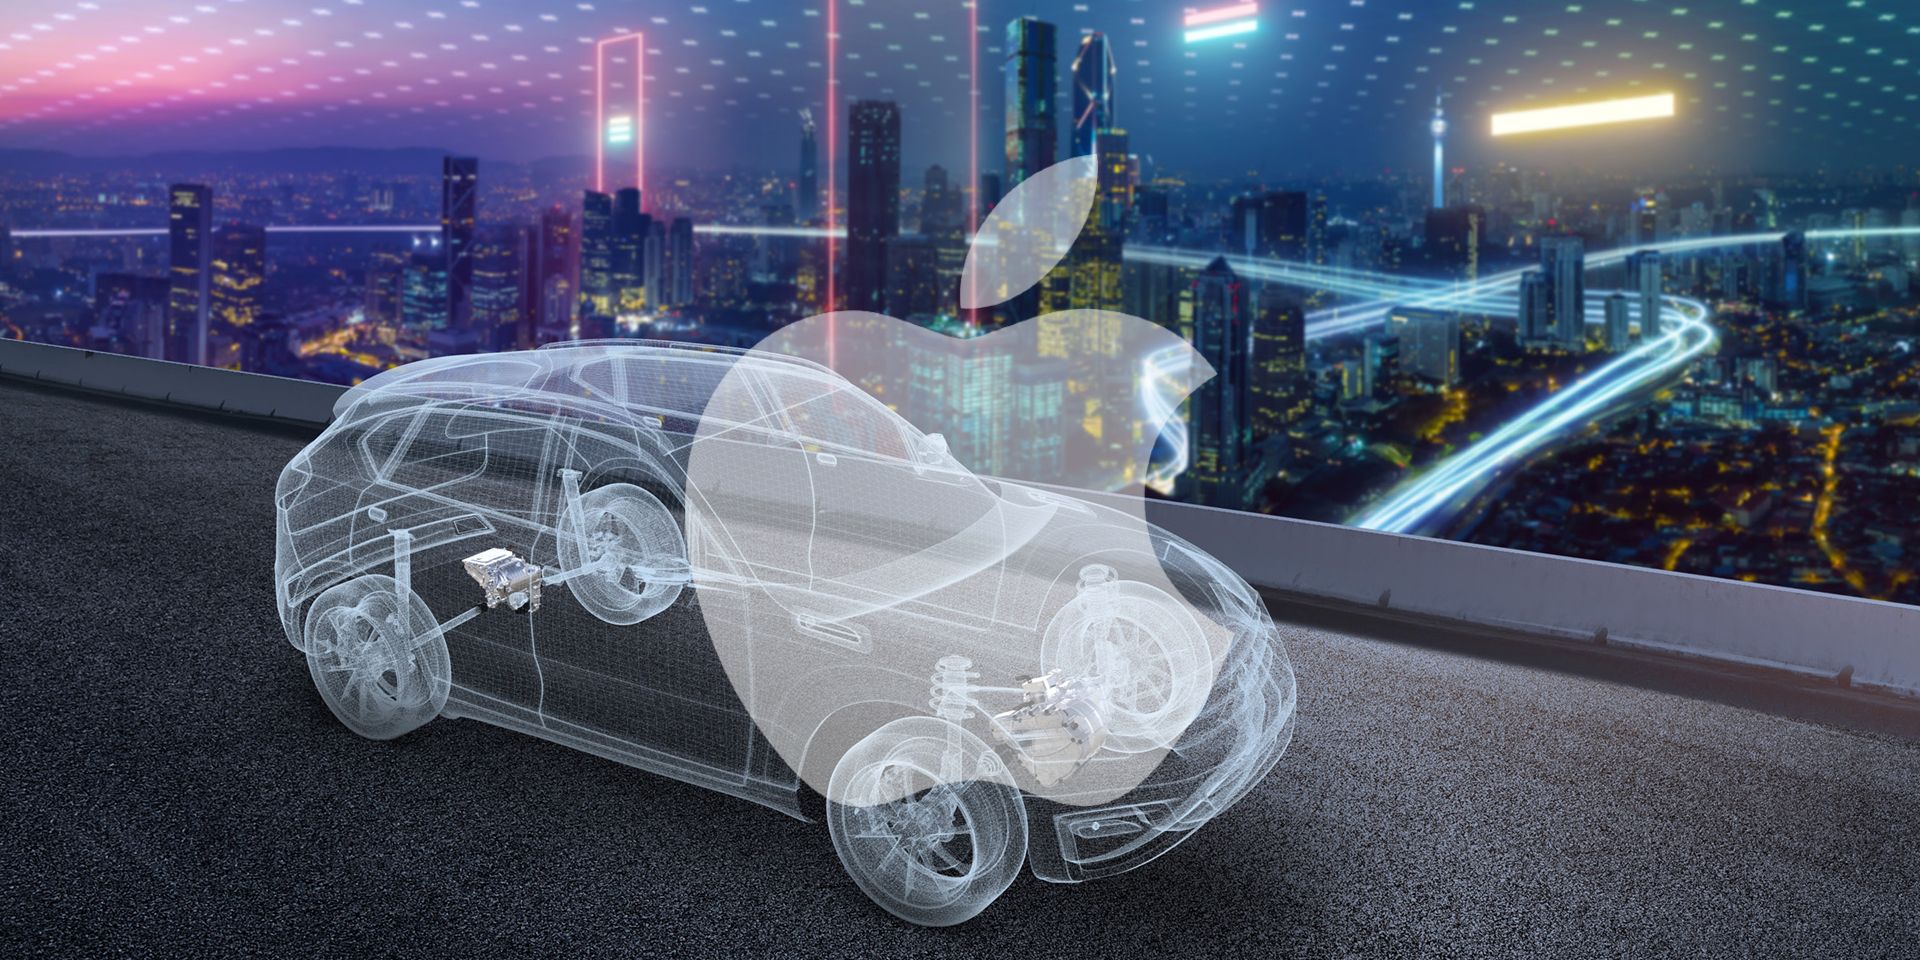 Σε αναζήτηση προμηθευτή μπαταριών για το ηλεκτρικό της αυτοκίνητο βρίσκεται η Apple